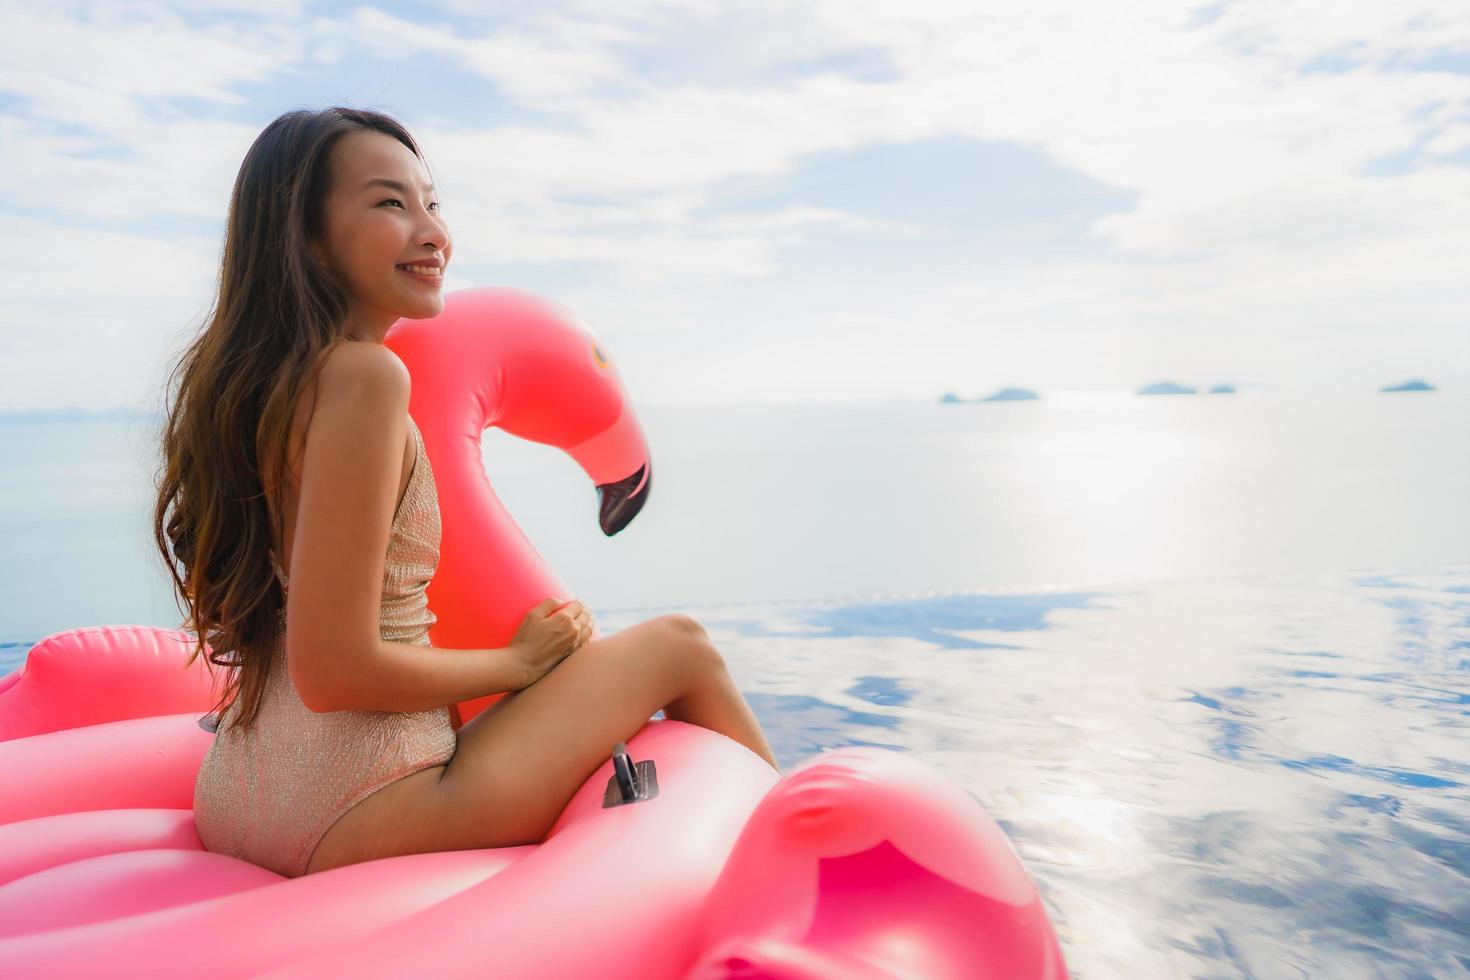 Ritratto di giovane donna asiatica sul fenicottero galleggiante gonfiabile intorno alla piscina all'aperto in hotel resort foto